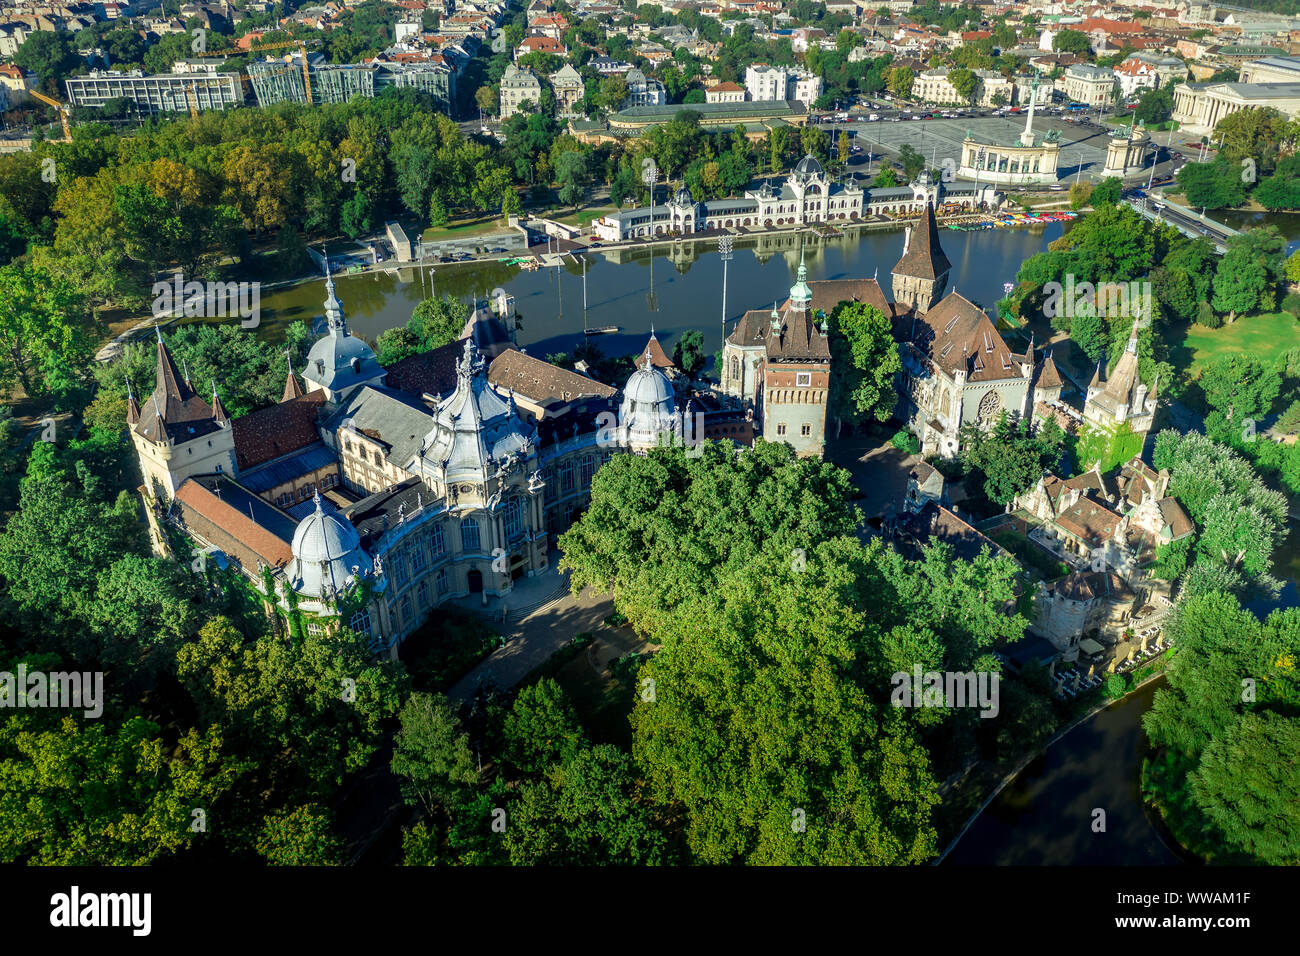 Vue aérienne du château de Vajdahunyad Varosliget dans près de la Place des Héros à Budapest Hongrie Banque D'Images